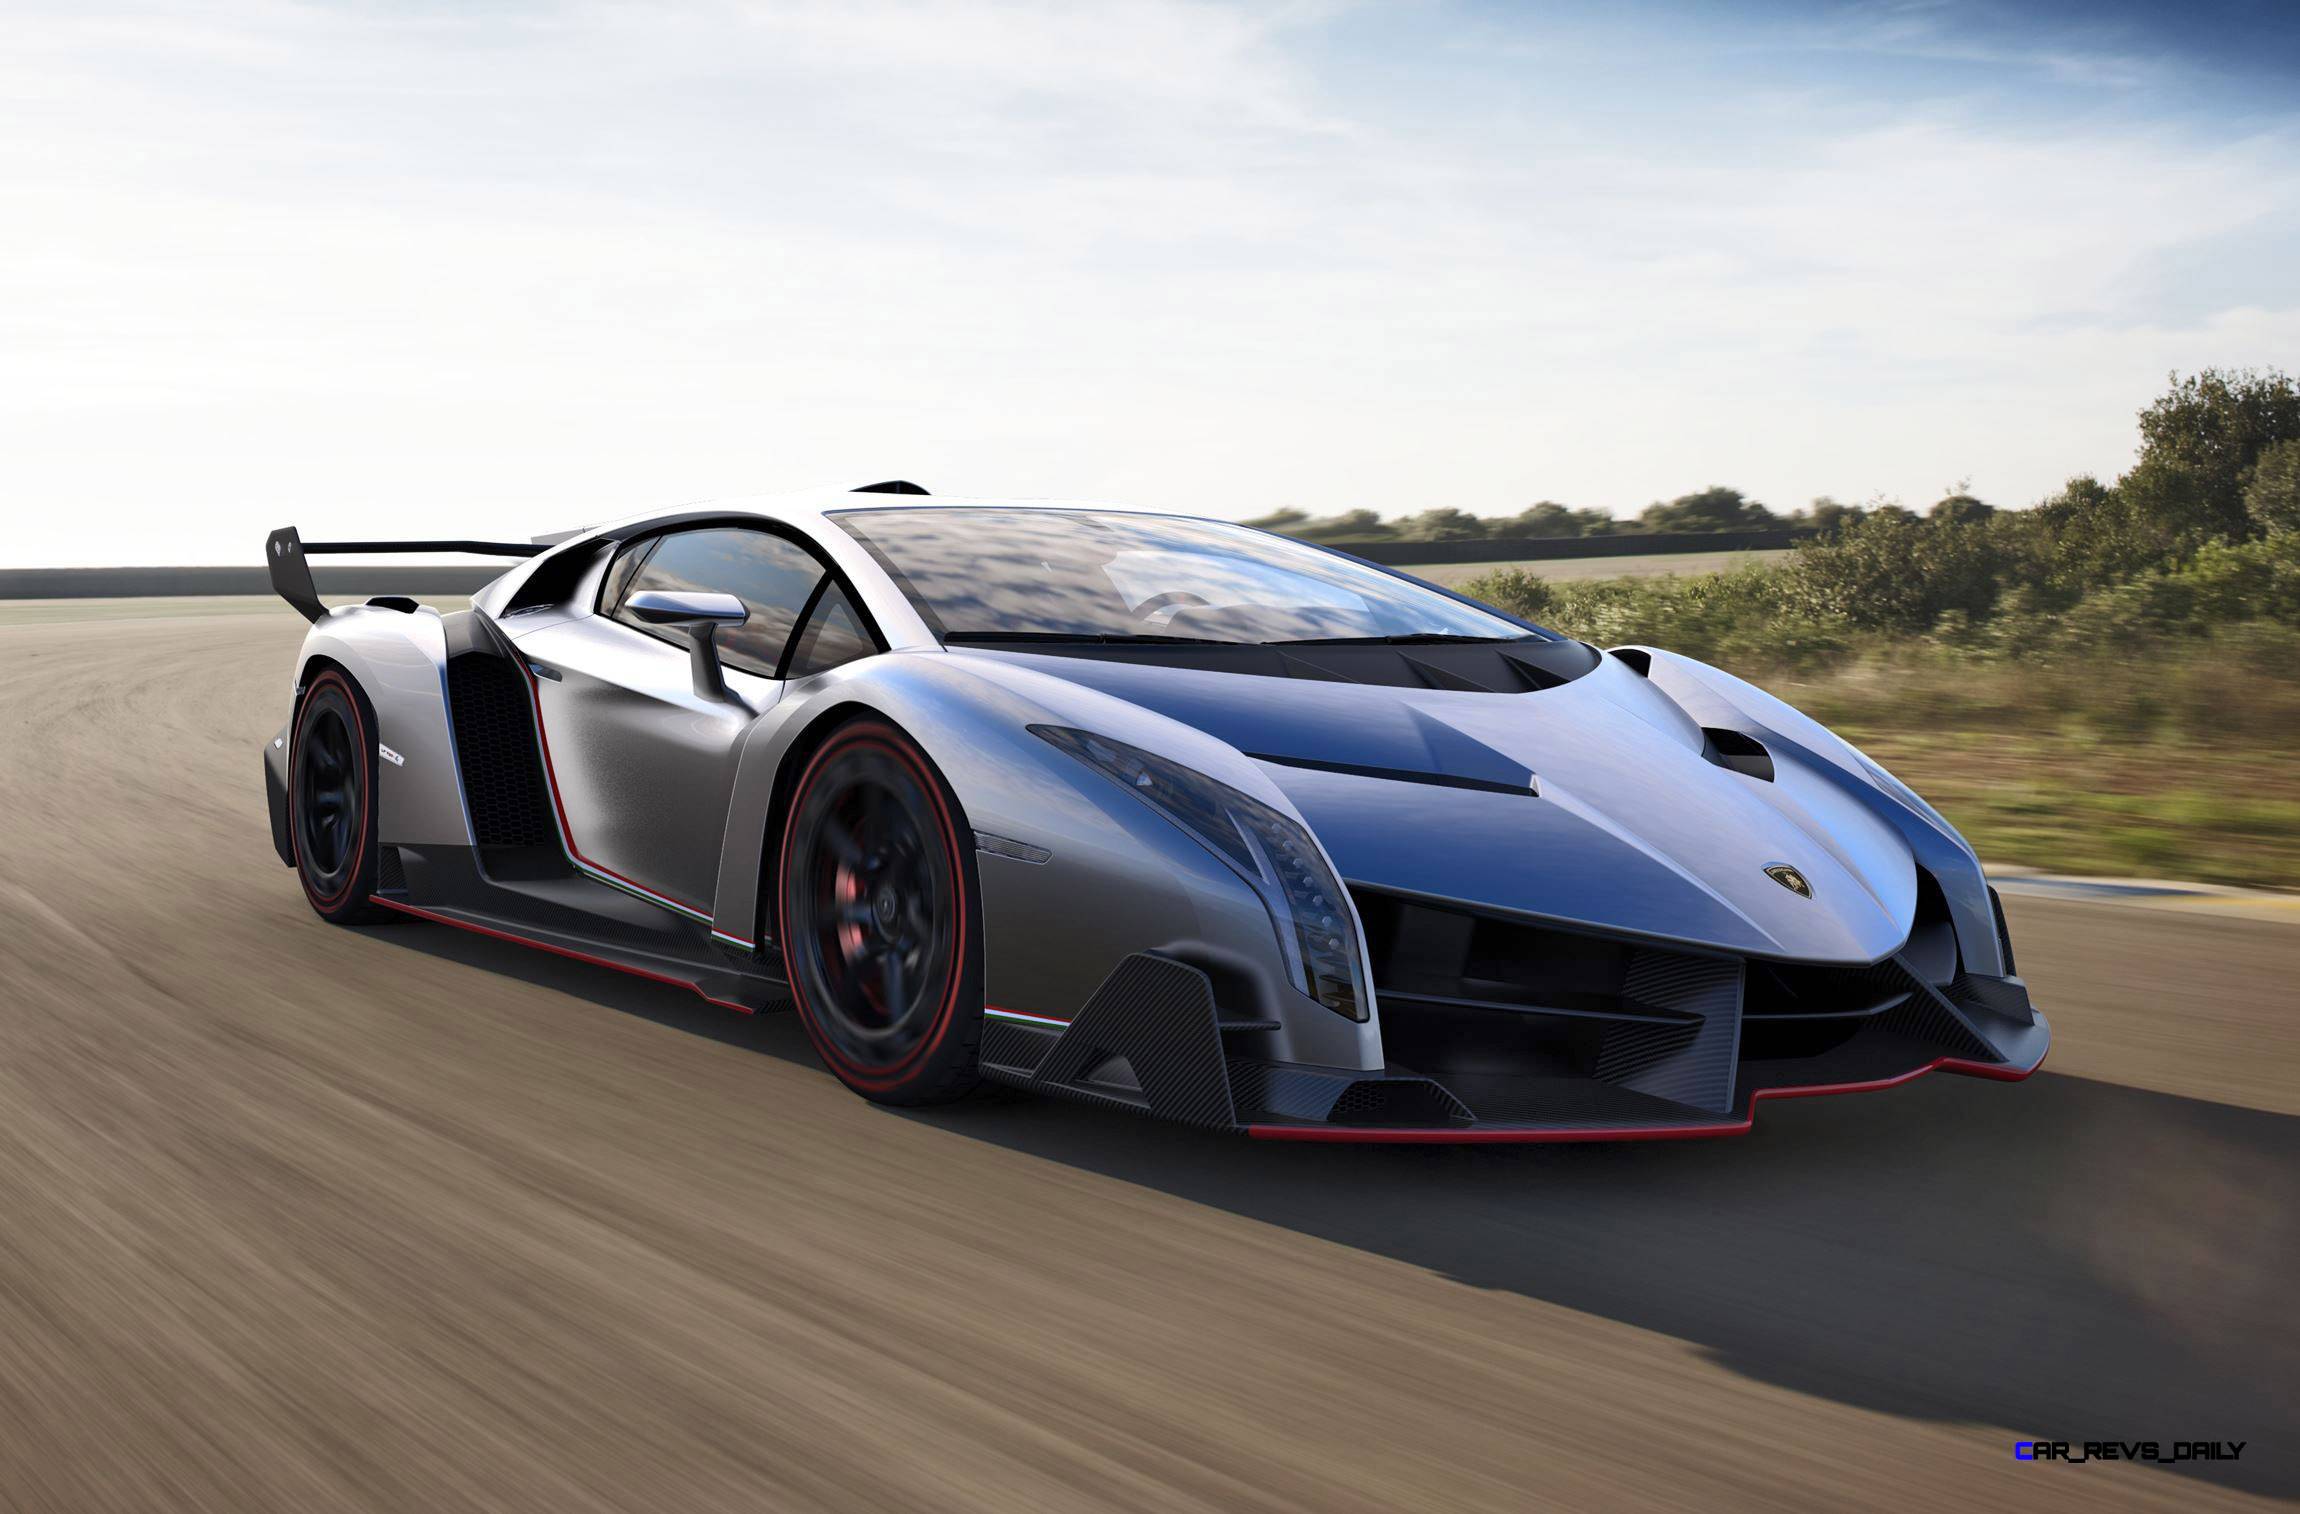 Lamborghini Veneno Front View